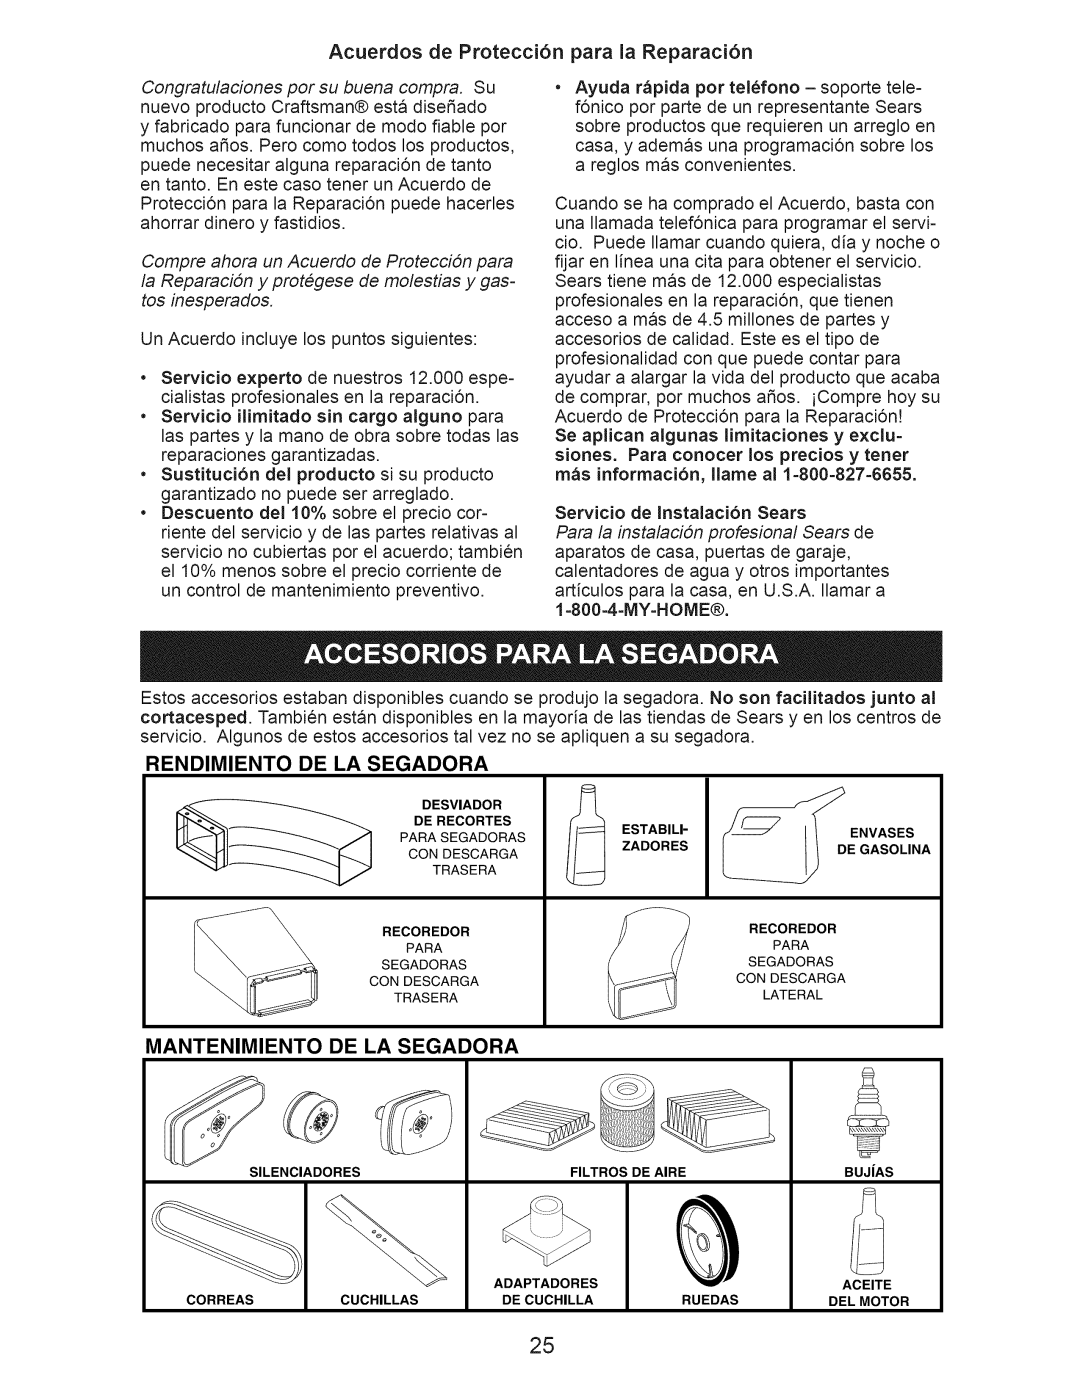 Craftsman 917.371032 Acuerdos de Protecci6n para la Reparaci6n, Rendimiento De La Segadora, Mantenimiento De La Segadora 